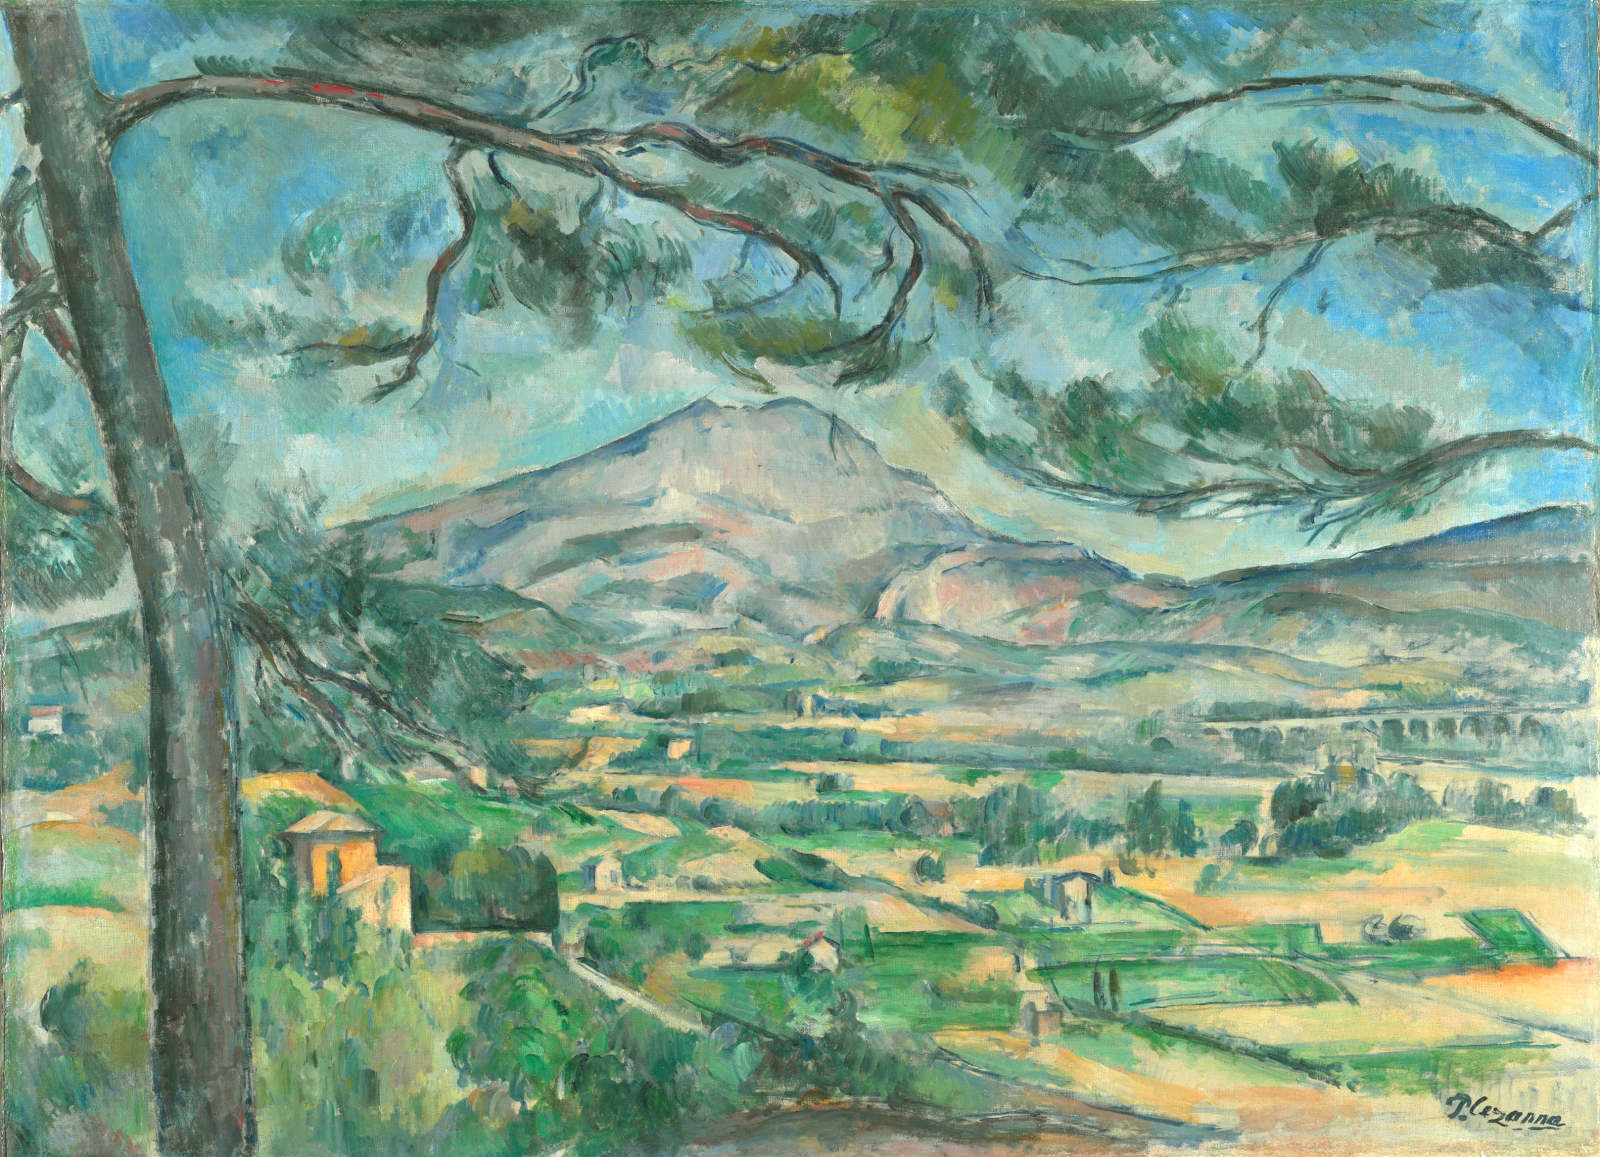 Montagne Sainte-Victoire és a nagy fenyő by Paul Cézanne - 1887 